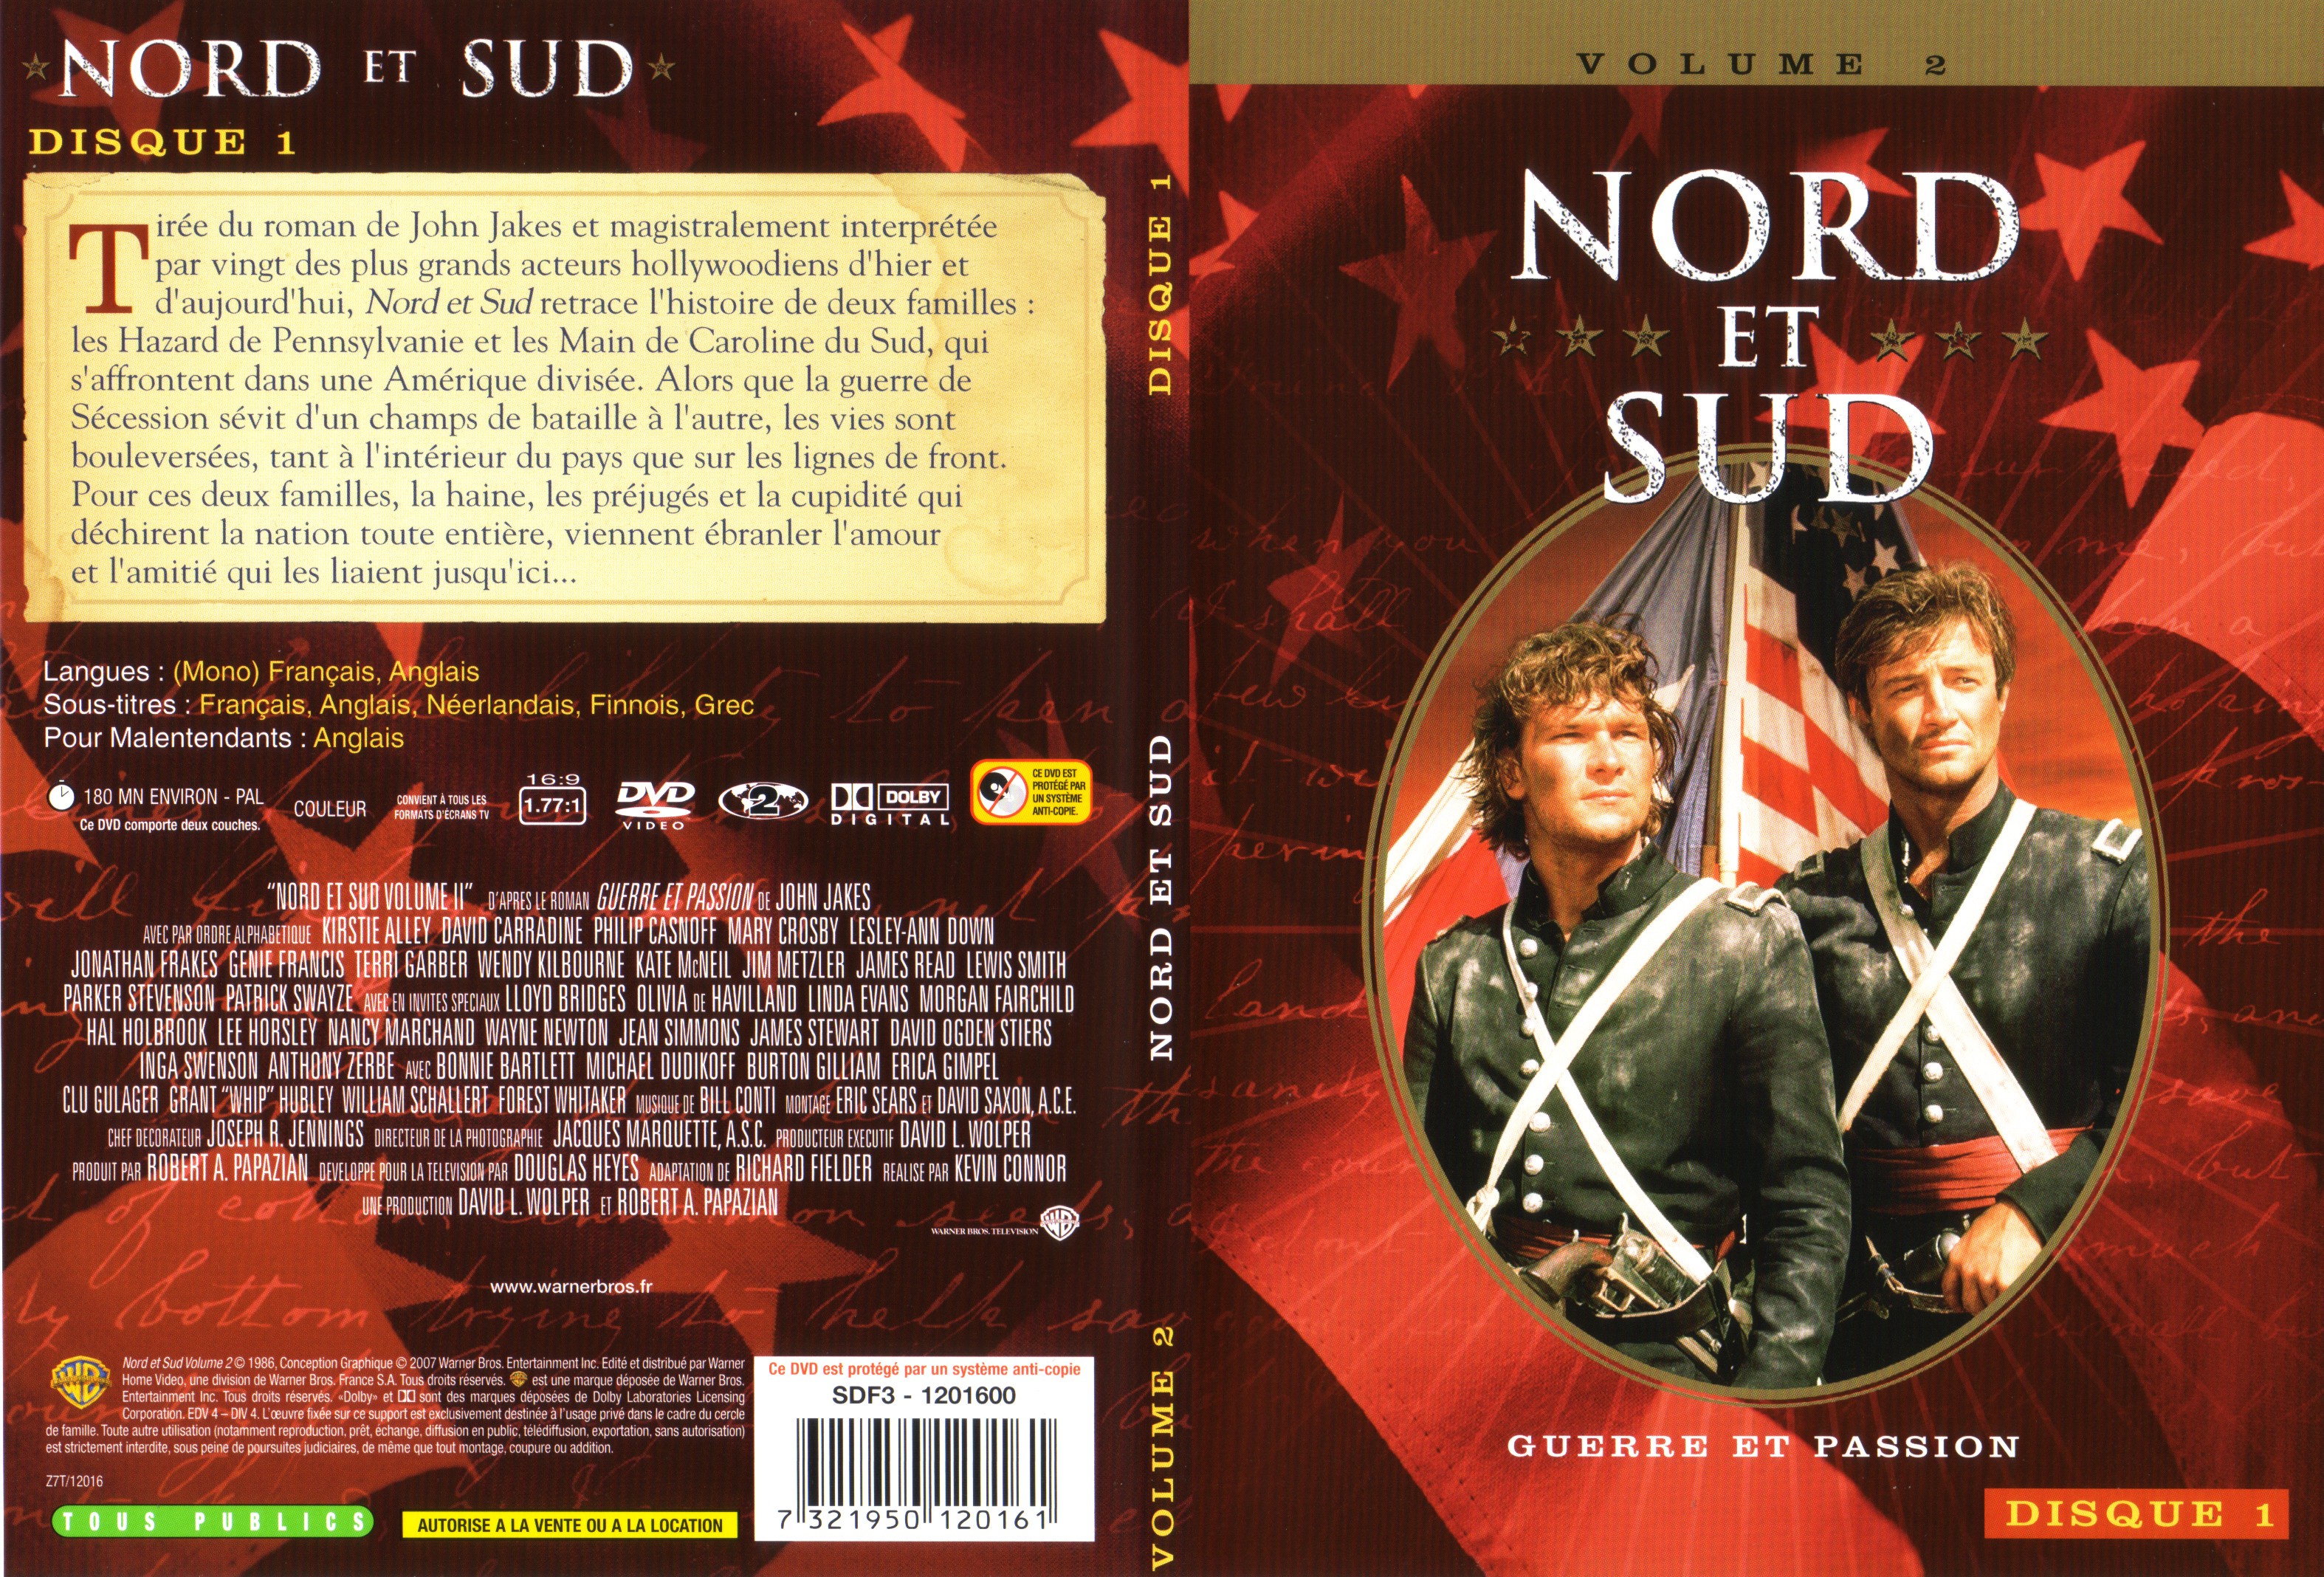 Jaquette DVD Nord et sud vol 2 dvd 1 v2